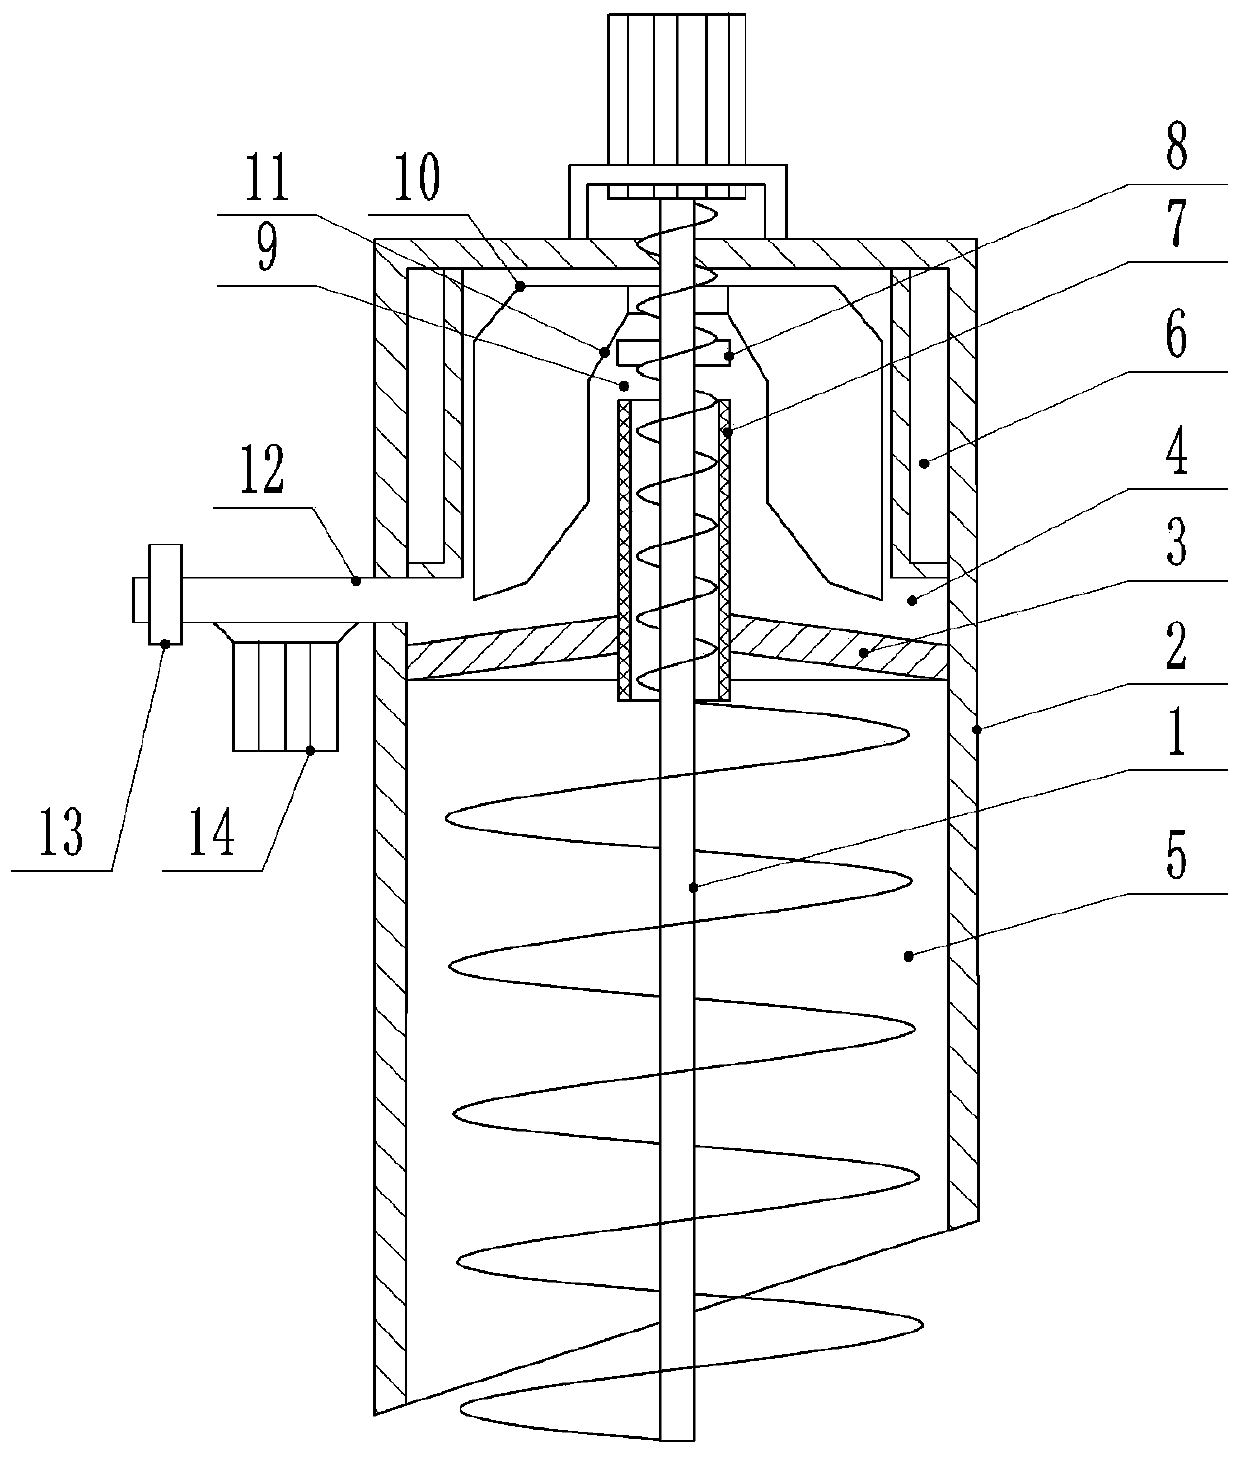 Quantitative indoor solid bitumen rapid heating extraction system